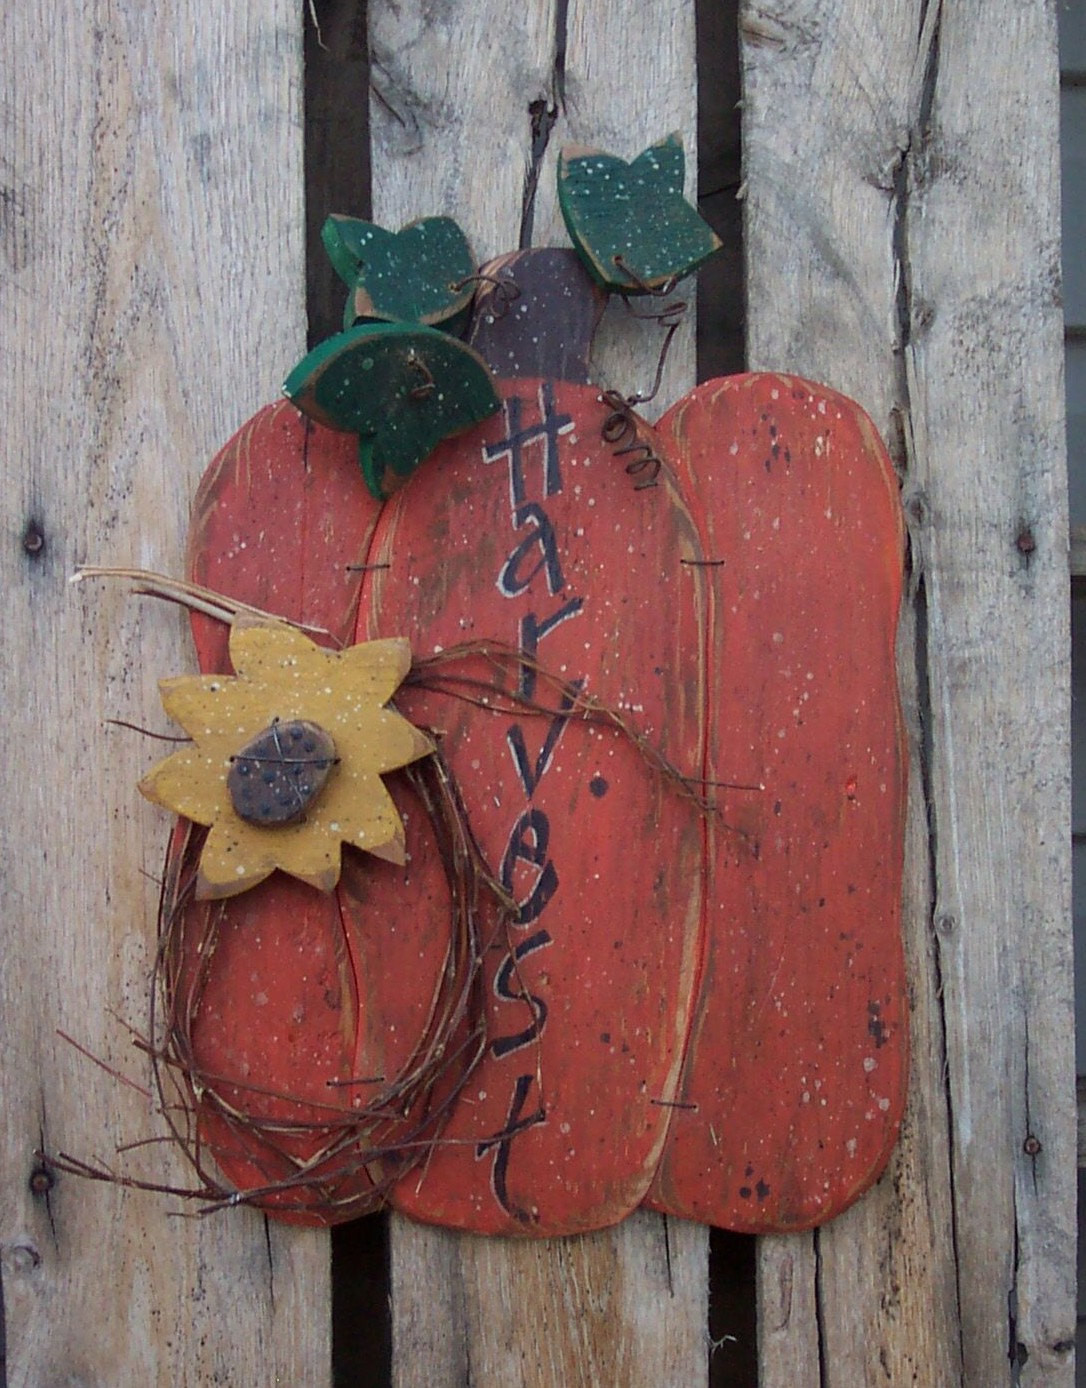 Best ideas about Wood Pumpkin Patterns
. Save or Pin Harvest Pumpkin Wood Craft Pattern with by KaylasKornerDesigns Now.